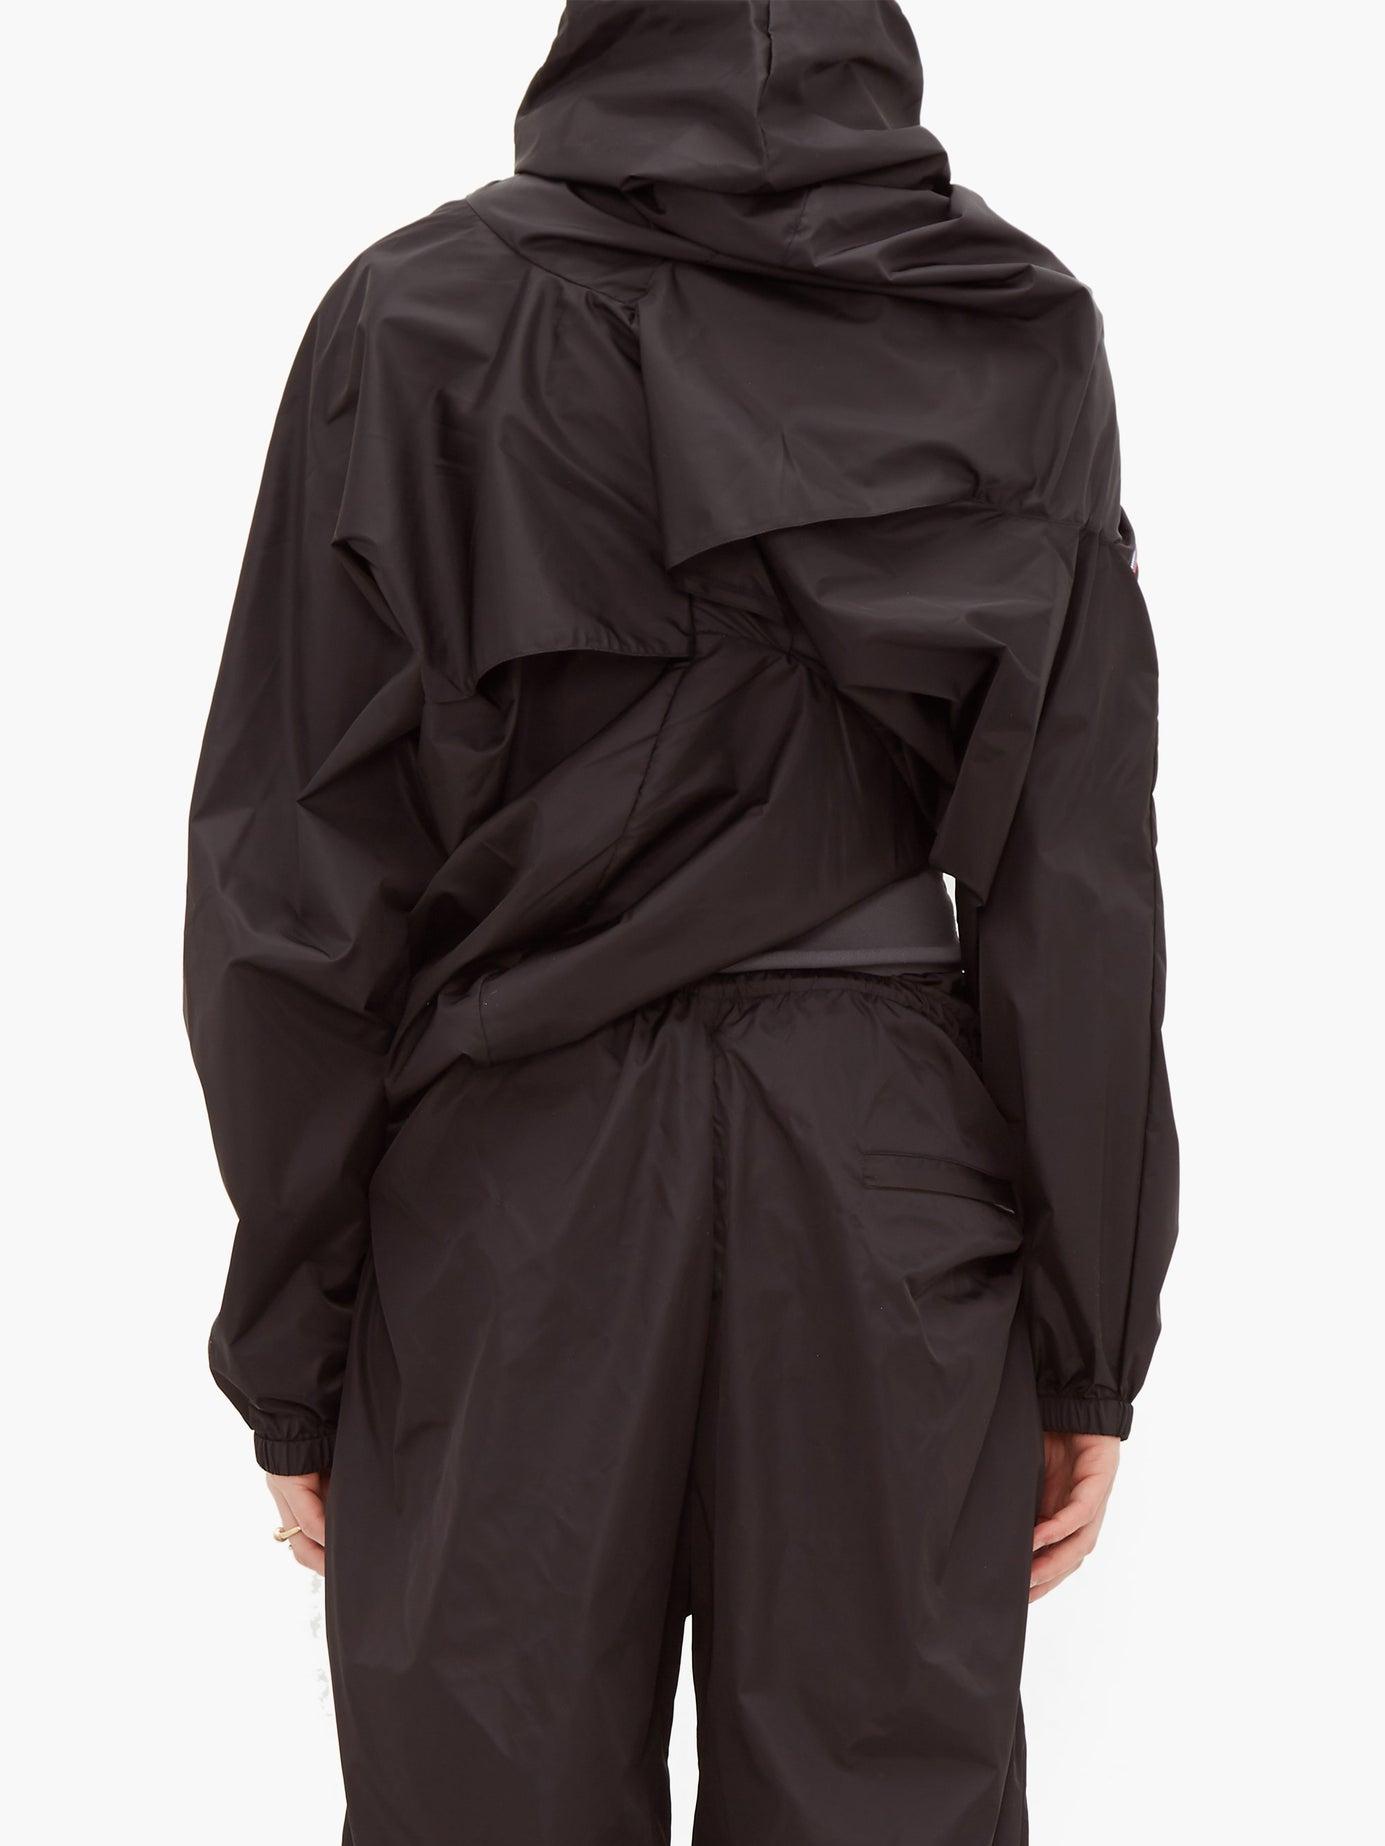 Y. Project Upside Down Technical Rain Jacket in Black for Men - Lyst